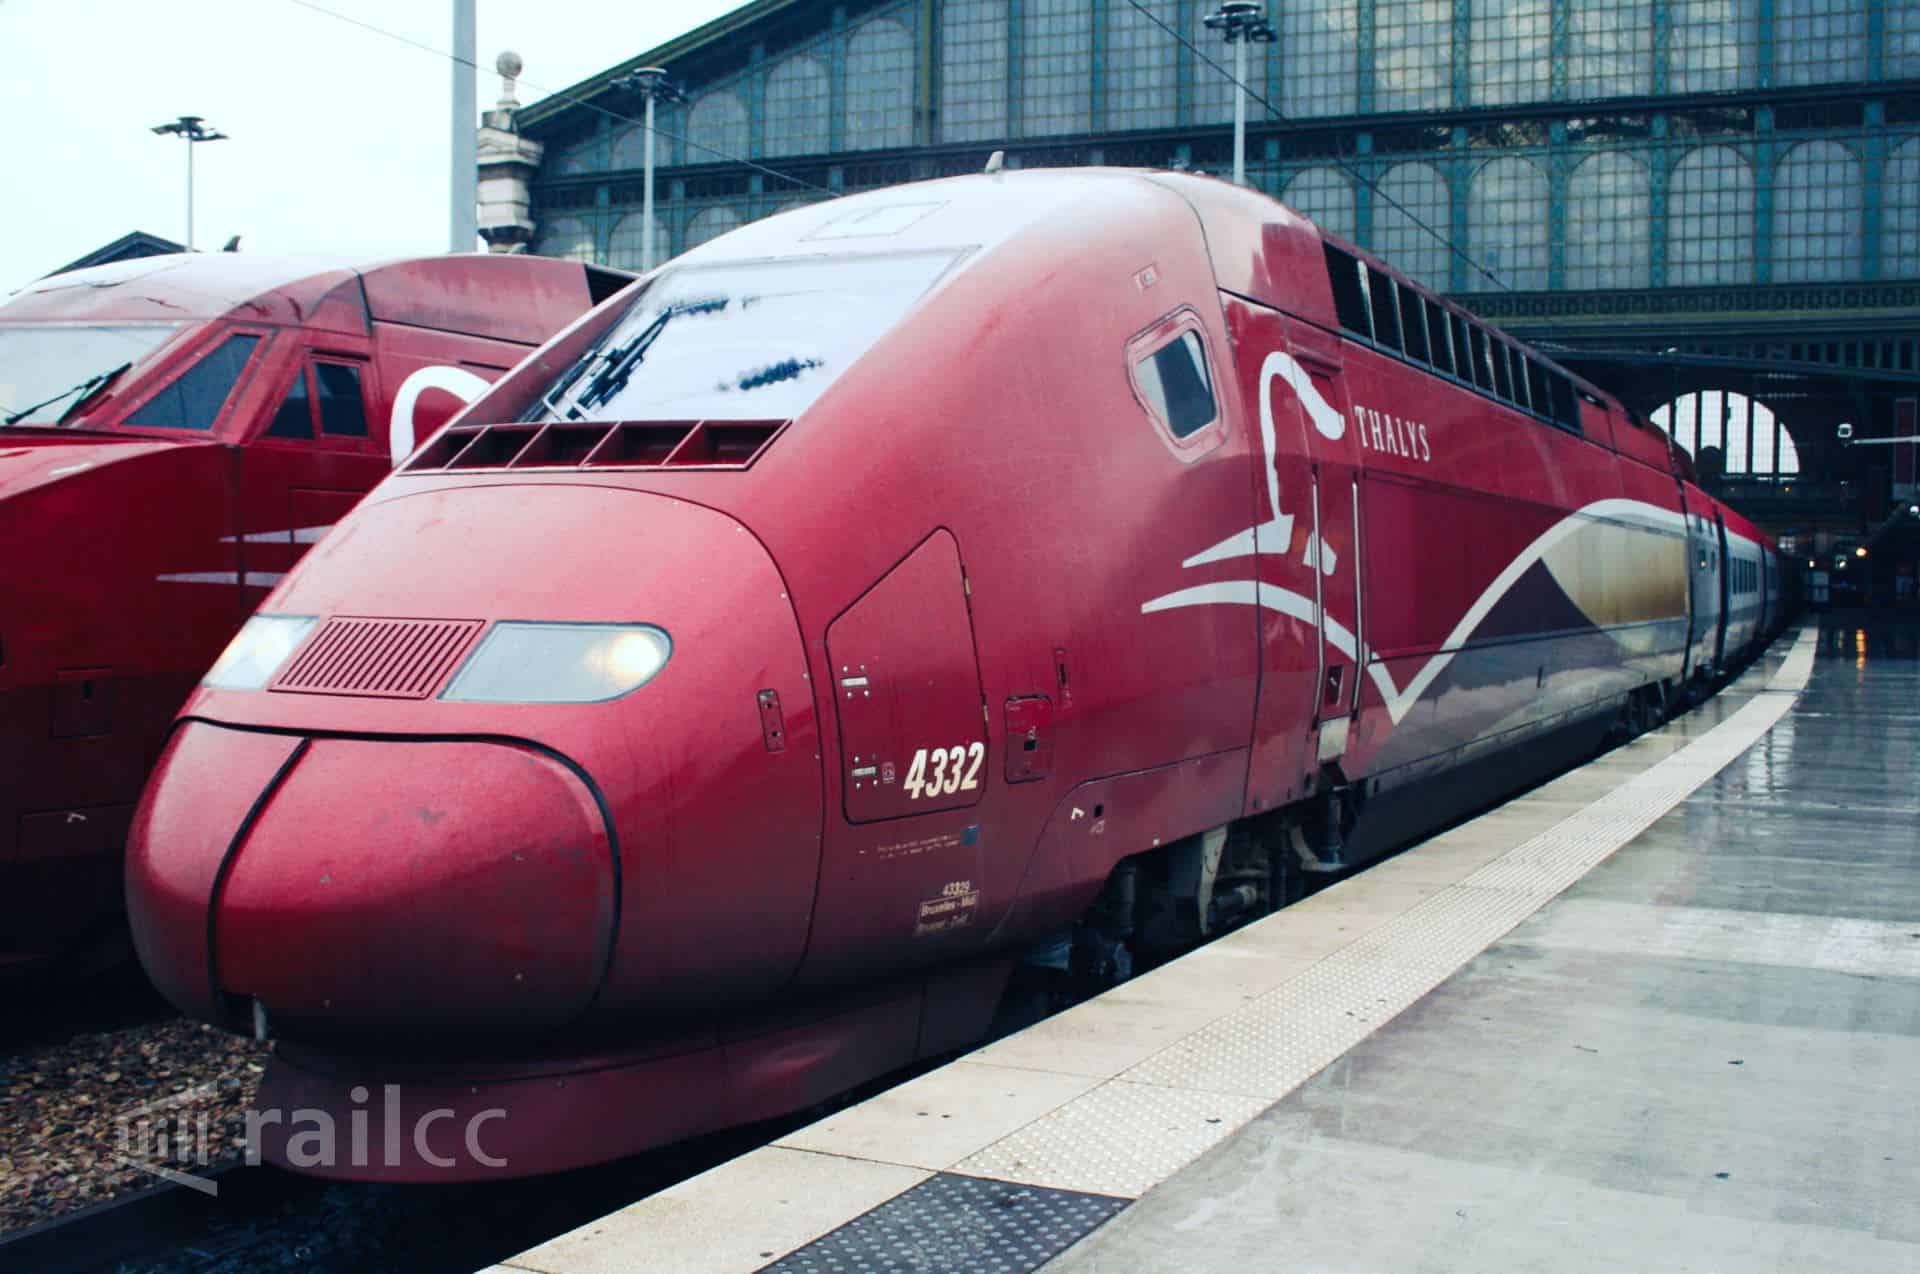 Köln nach Paris im Tahlys Zug - Bewertung der Tickets und Erfahrungen